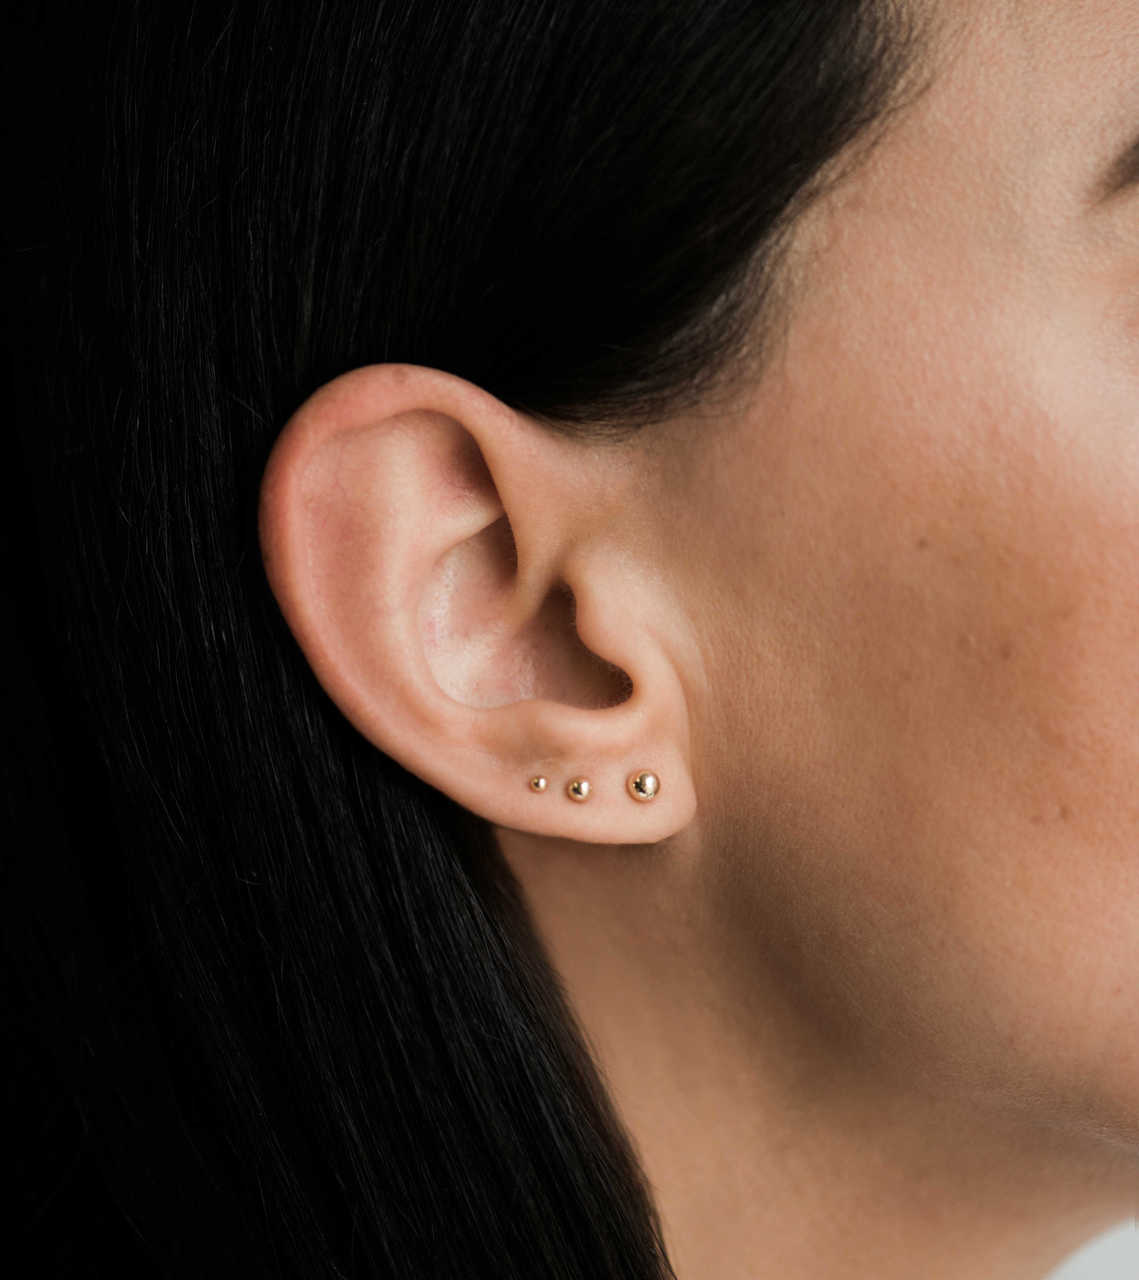 14k Gold Mini Diamond Flower Stud Earrings - Zoe Lev Jewelry